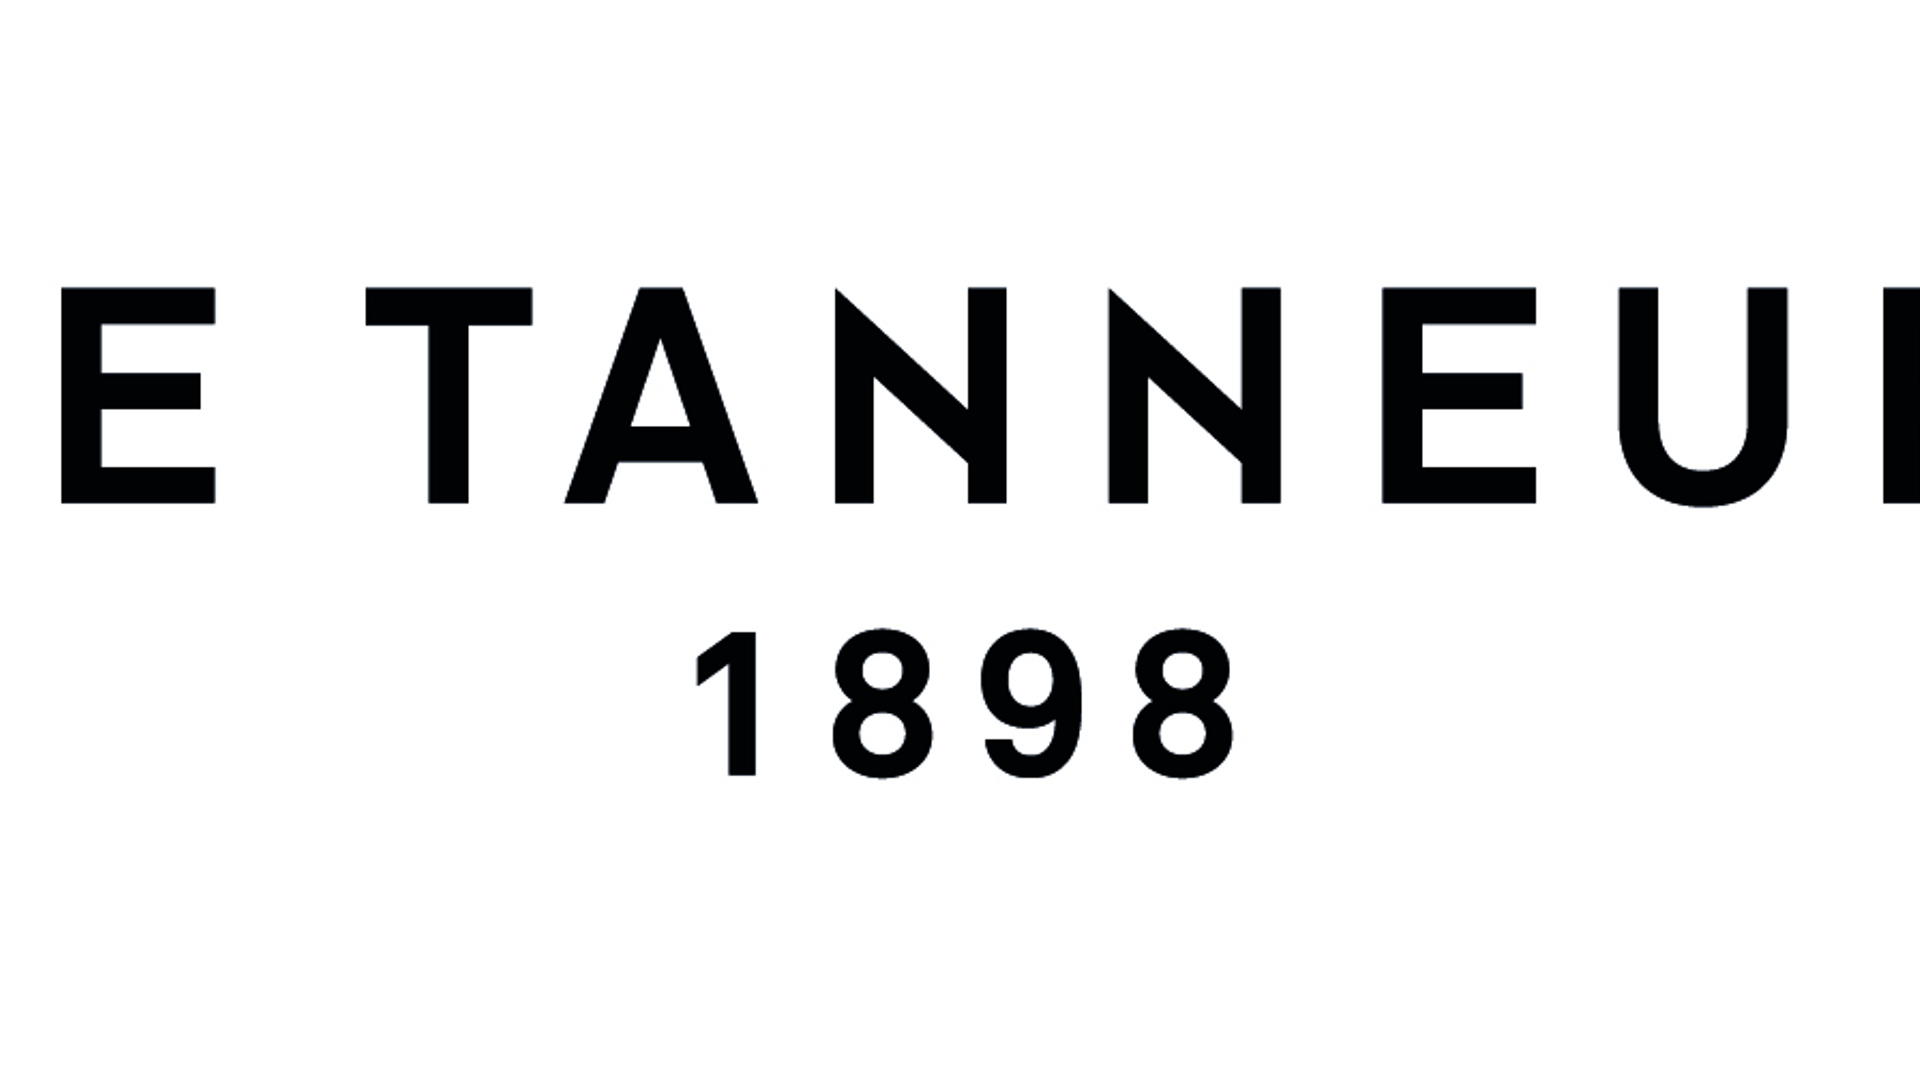 le tanneur logo.jpg